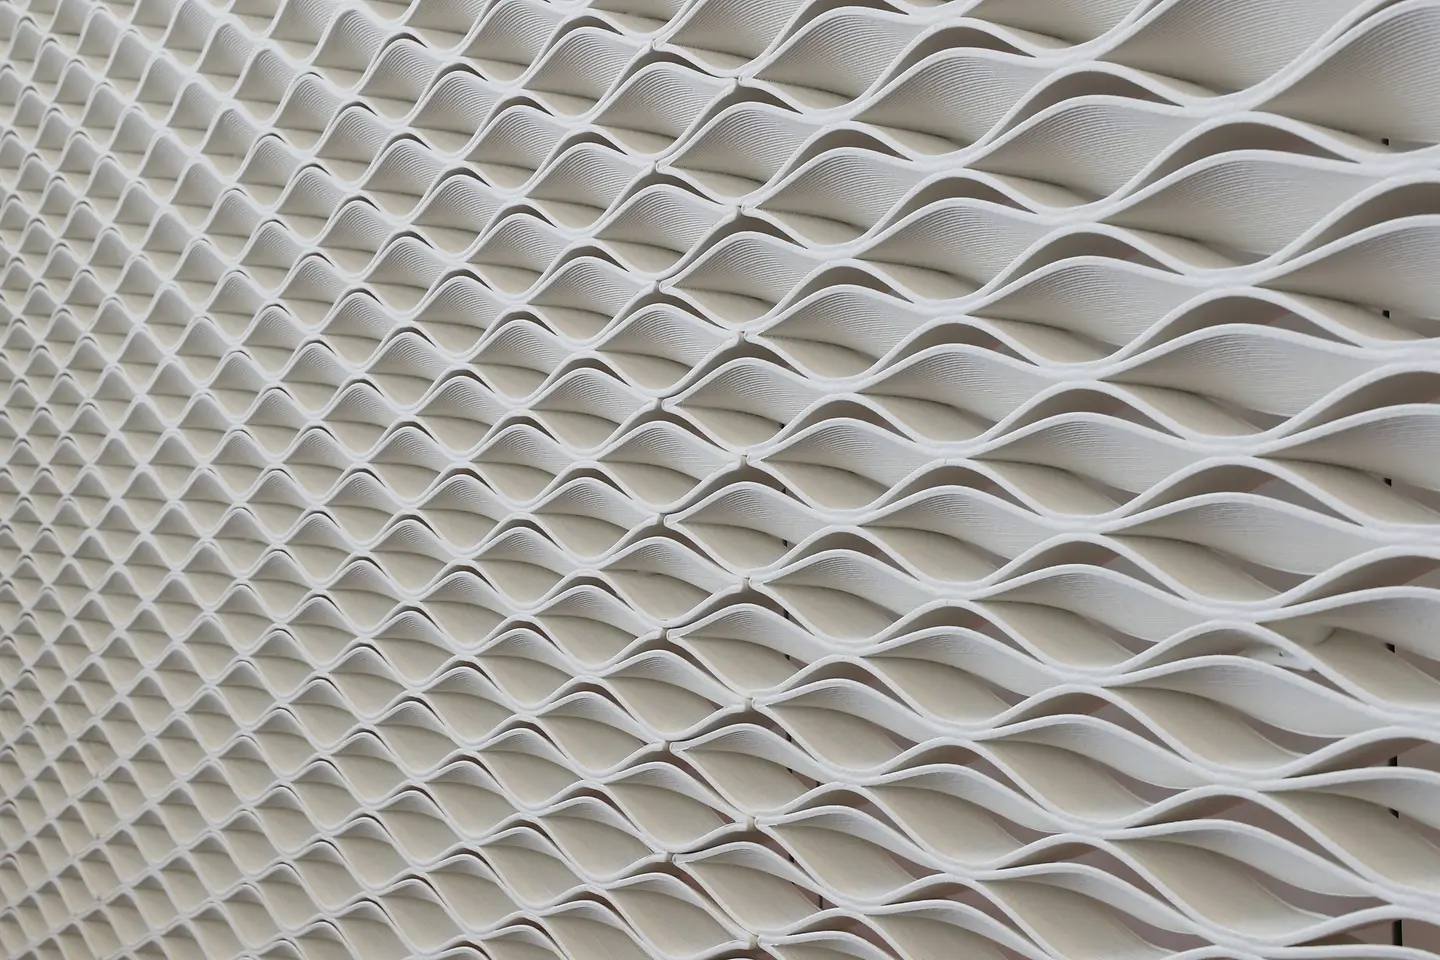 
Eine aus Loctite Materialien 3D-gedruckte Wand im Henkel Innovations- und Interaktionszentrum, die von Jennings Design Studio, Dublin und Aectual, Niederlande, designt wurde.